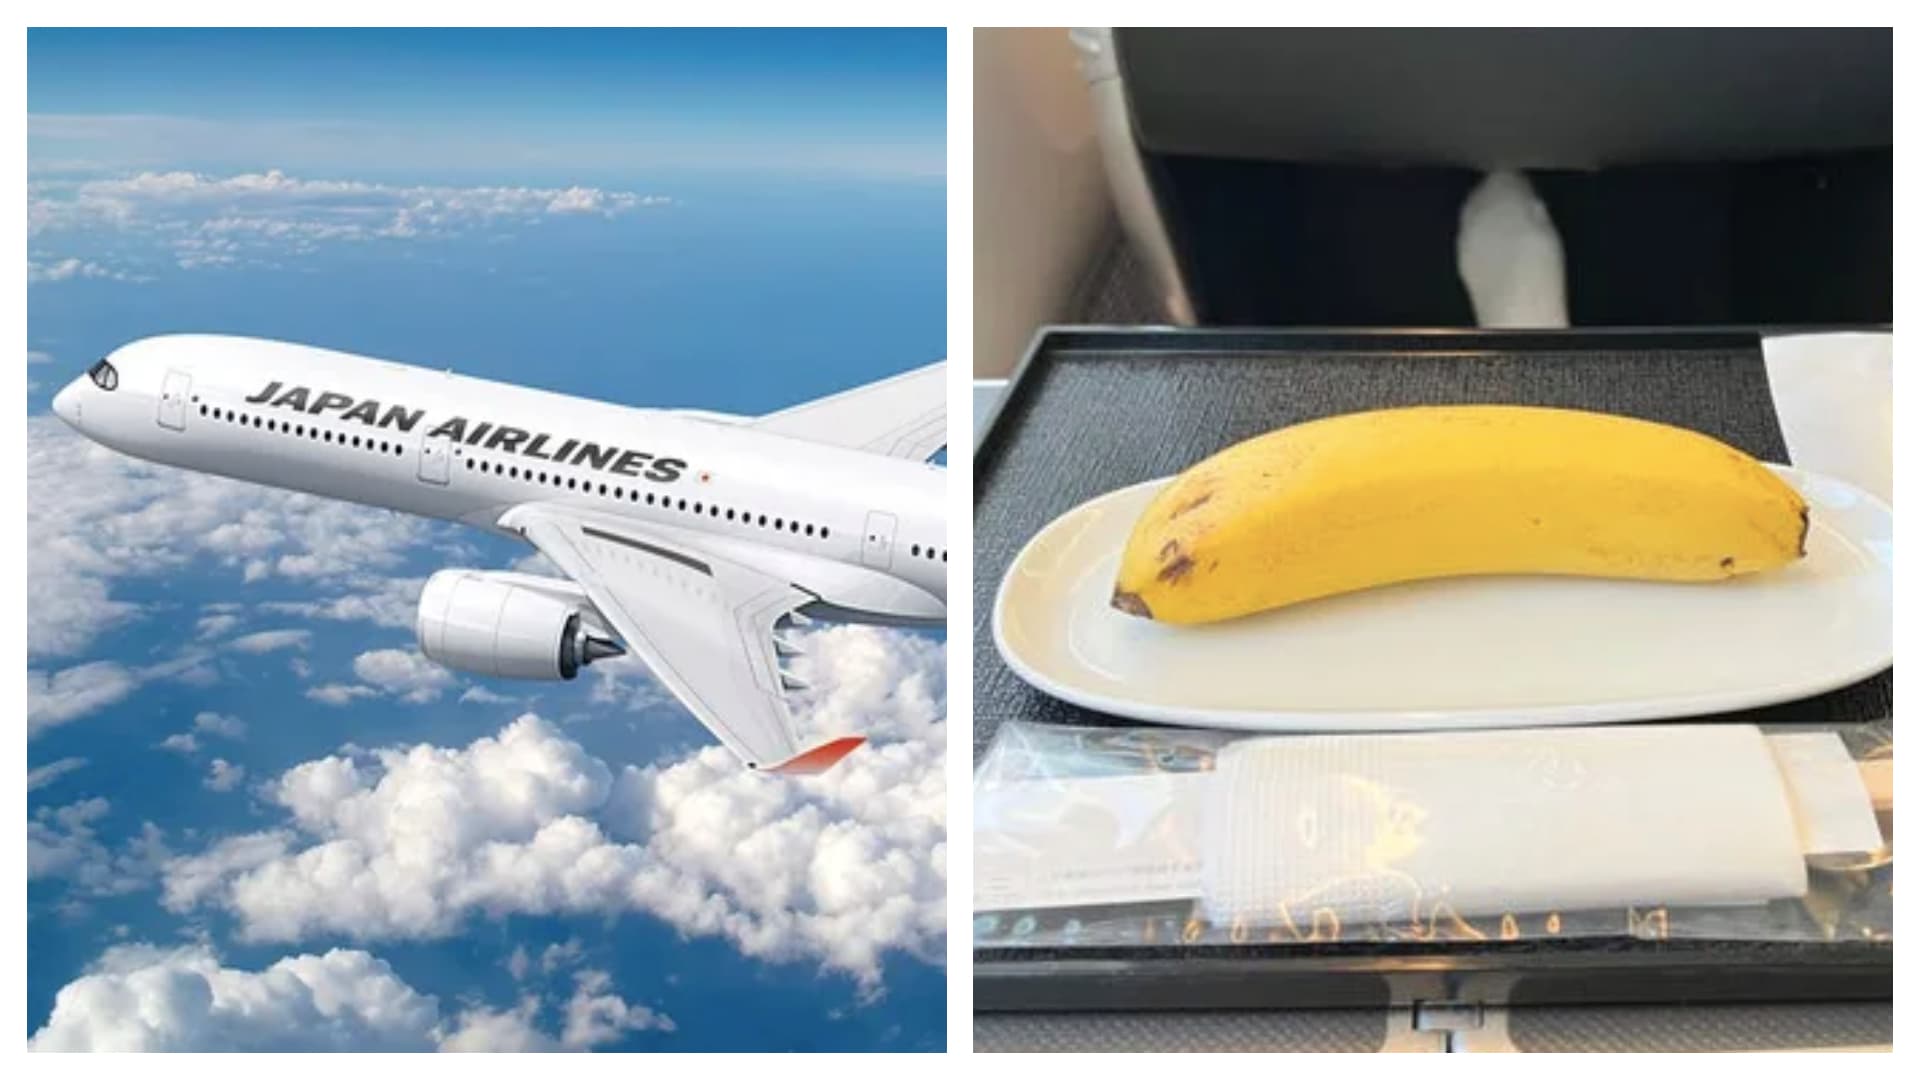 Letecká společnost servírovala v rámci veganského menu jen banán.